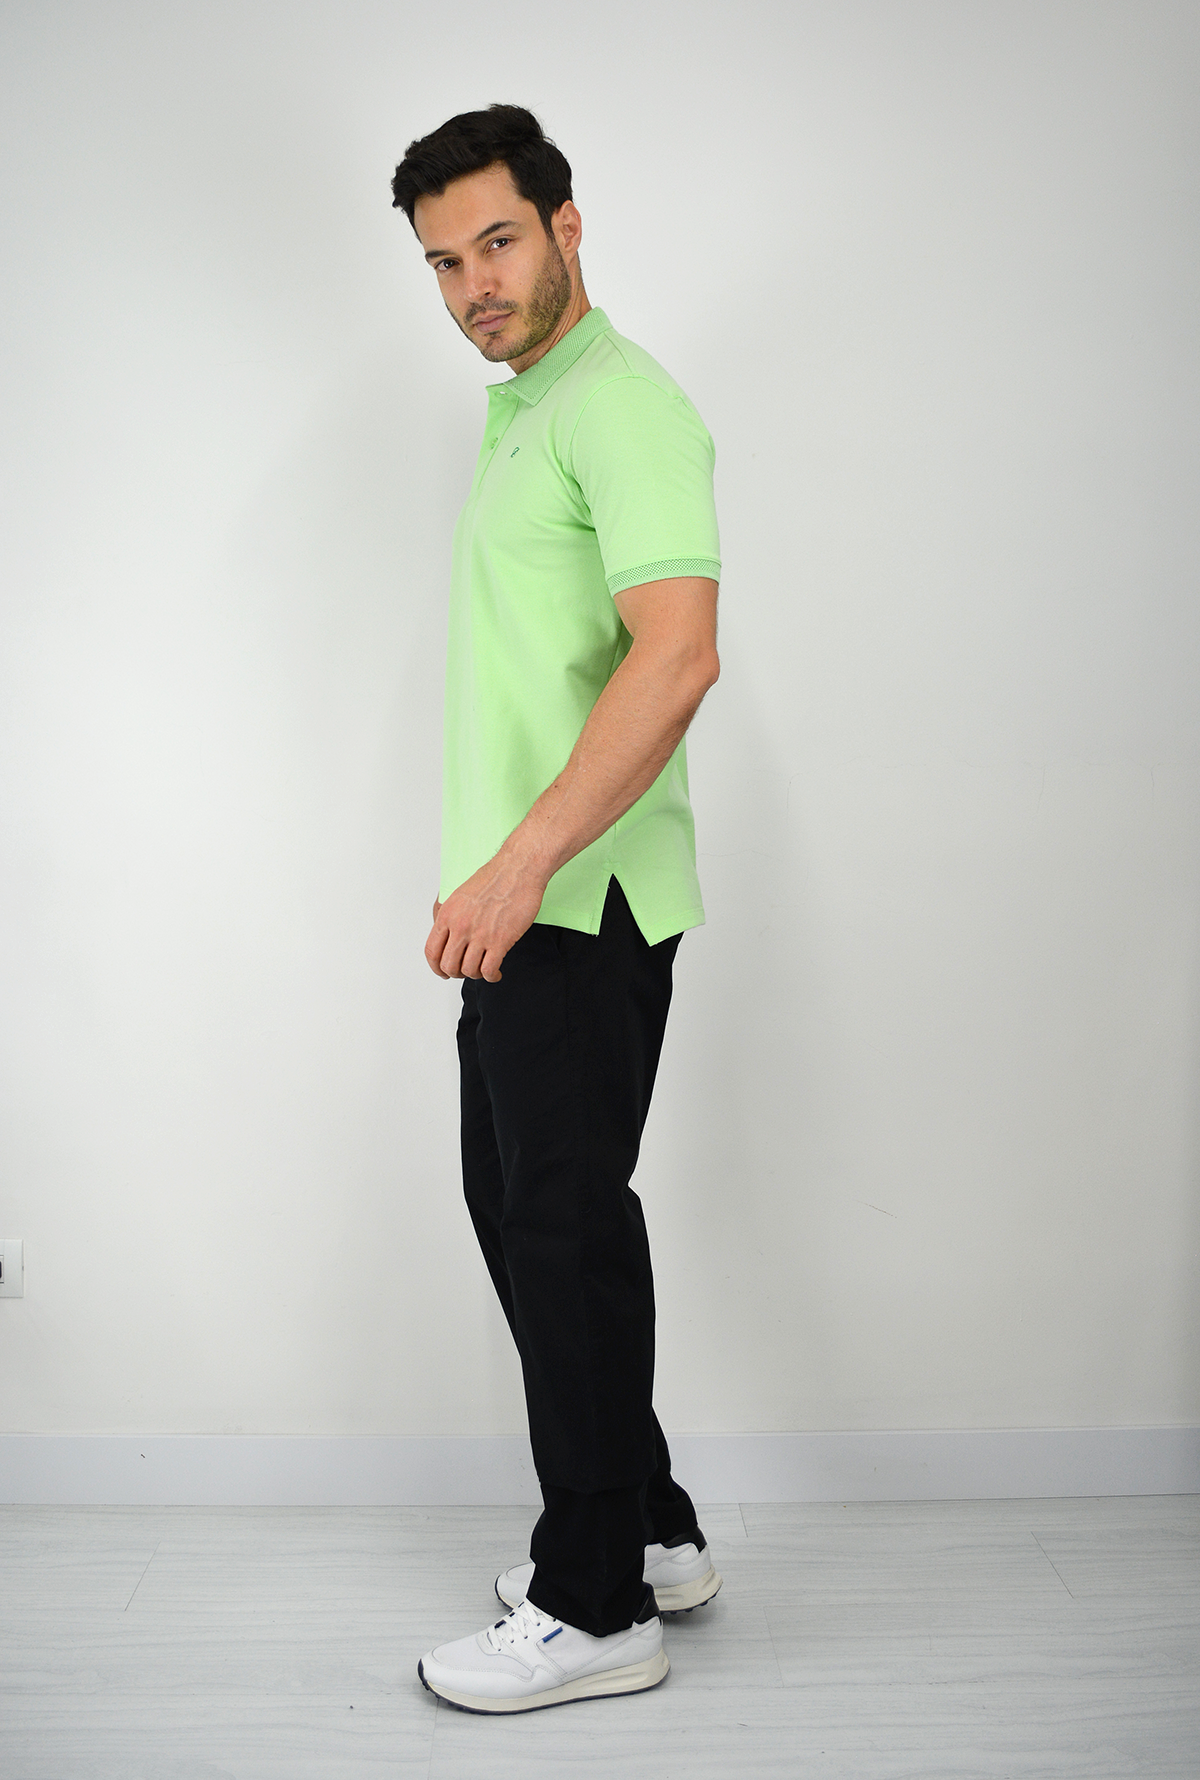 Camiseta Tipo Polo Verde Claro Para Hombre CPB03 – Delascar I Tienda de  Ropa para Hombre Online I Moda - Colombia